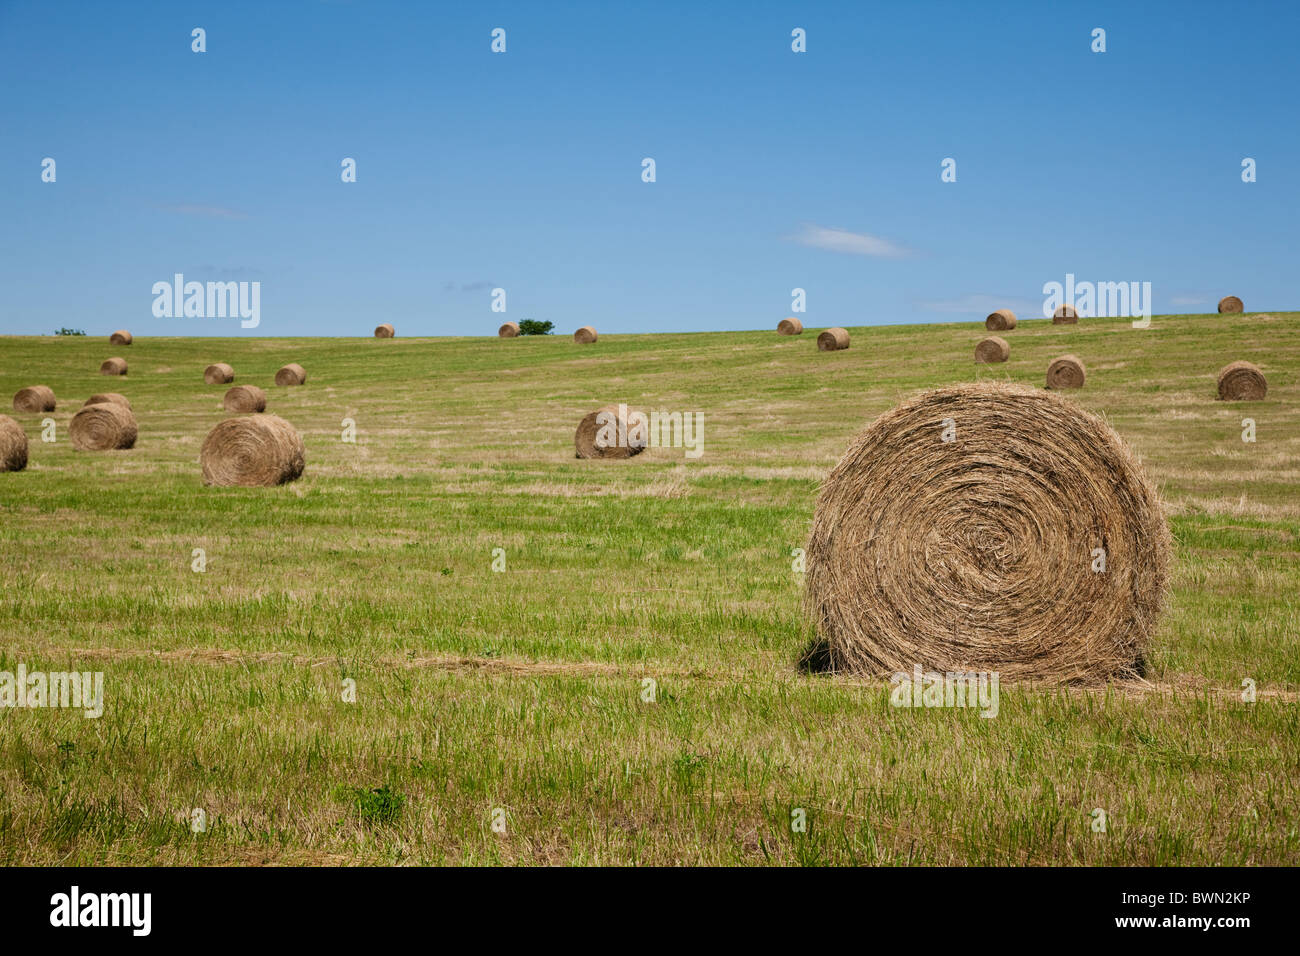 USA, Missouri, Hay bales on field Stock Photo